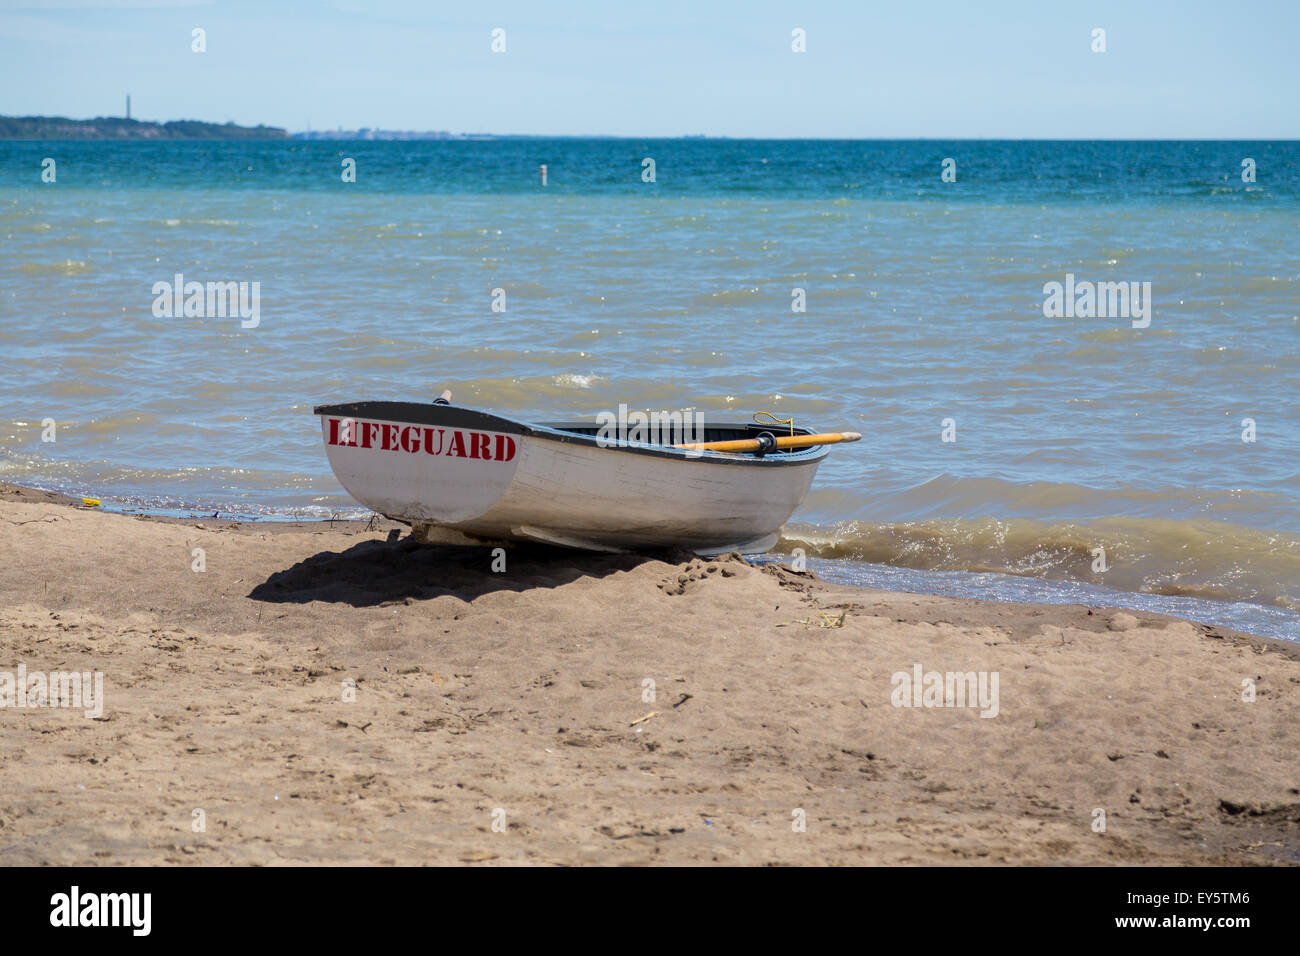 Ein Rettungsschwimmer-Boot am Wasser an einem Strand. Textfreiraum ist unterhalb und oberhalb des Bootes. Stockfoto